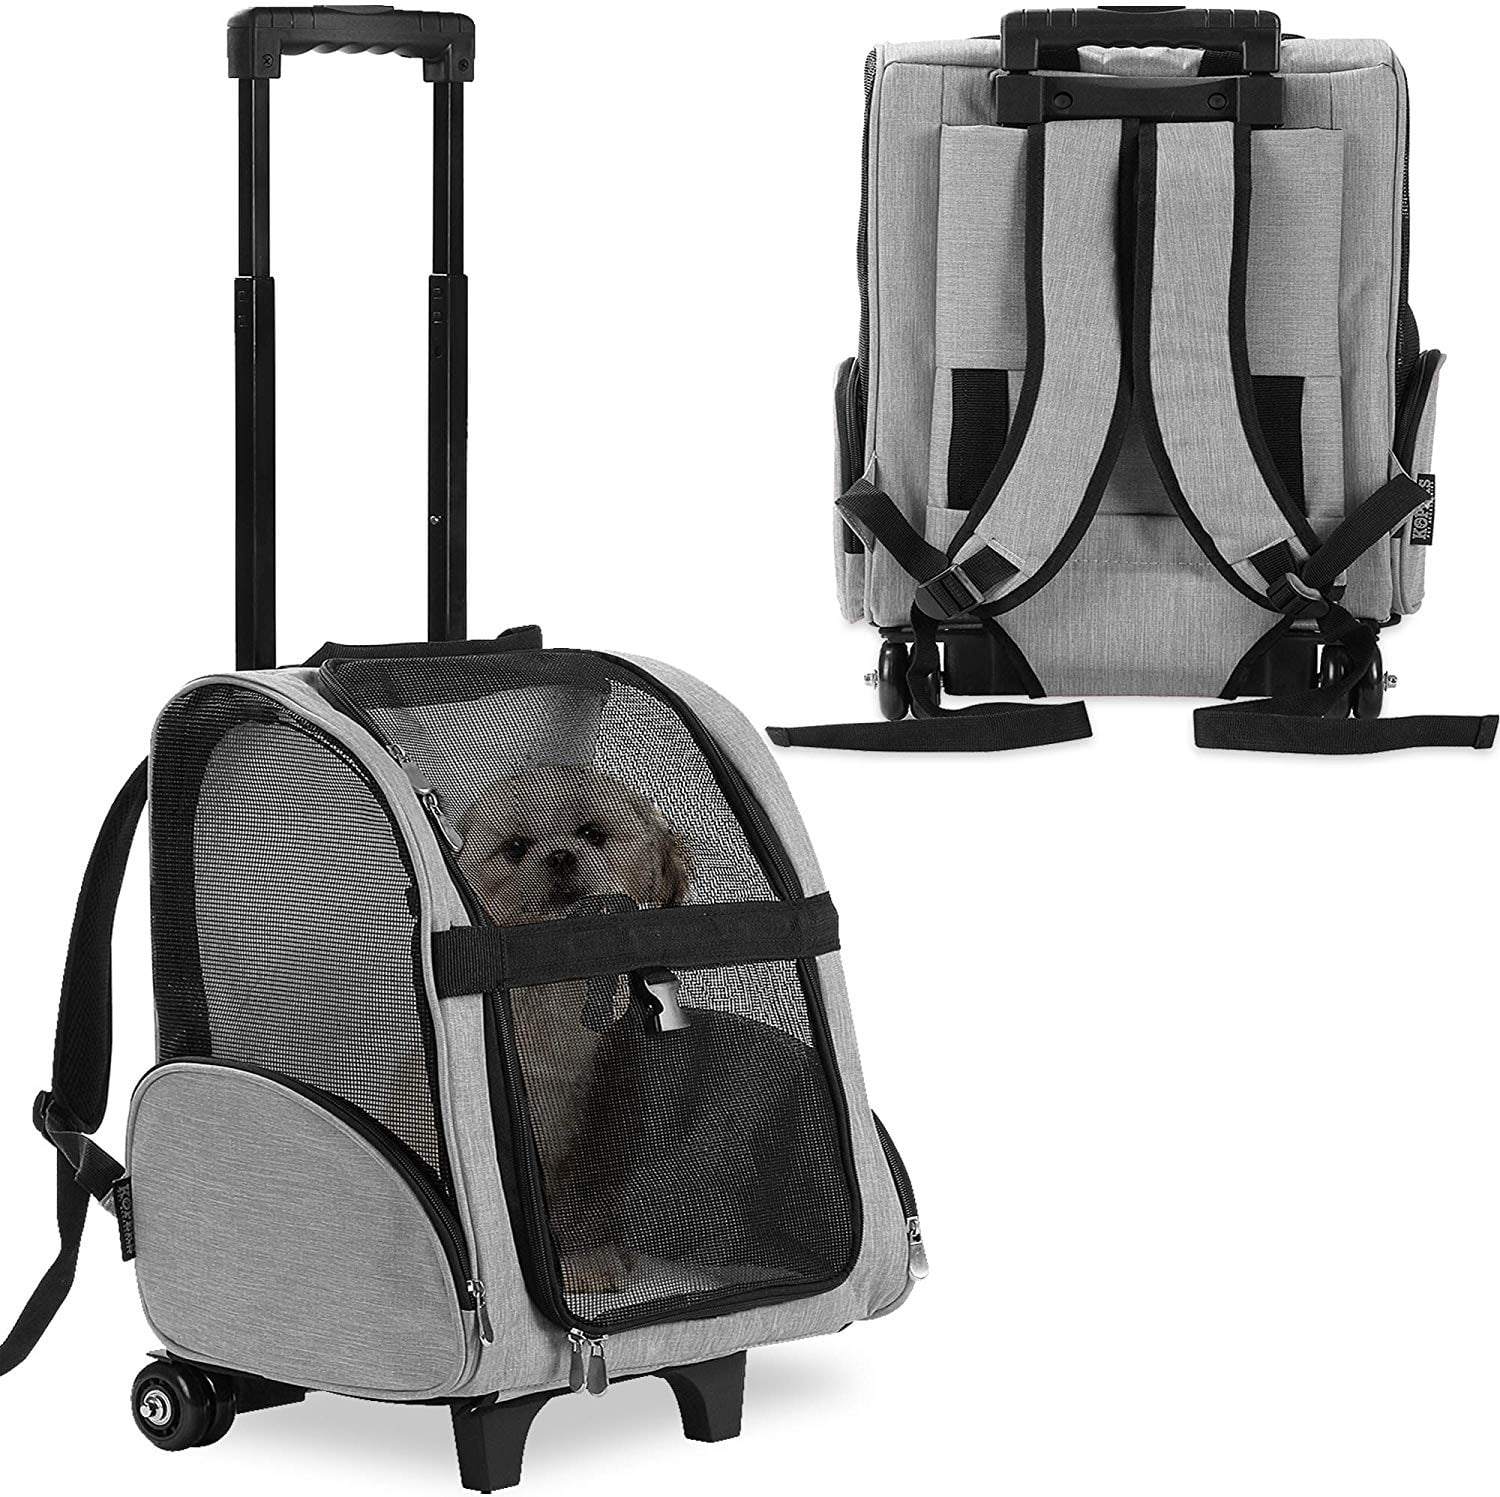 Cat Kitten Design Foldable Travel Backpack Rucksack Bag Black White Grey Kitties 